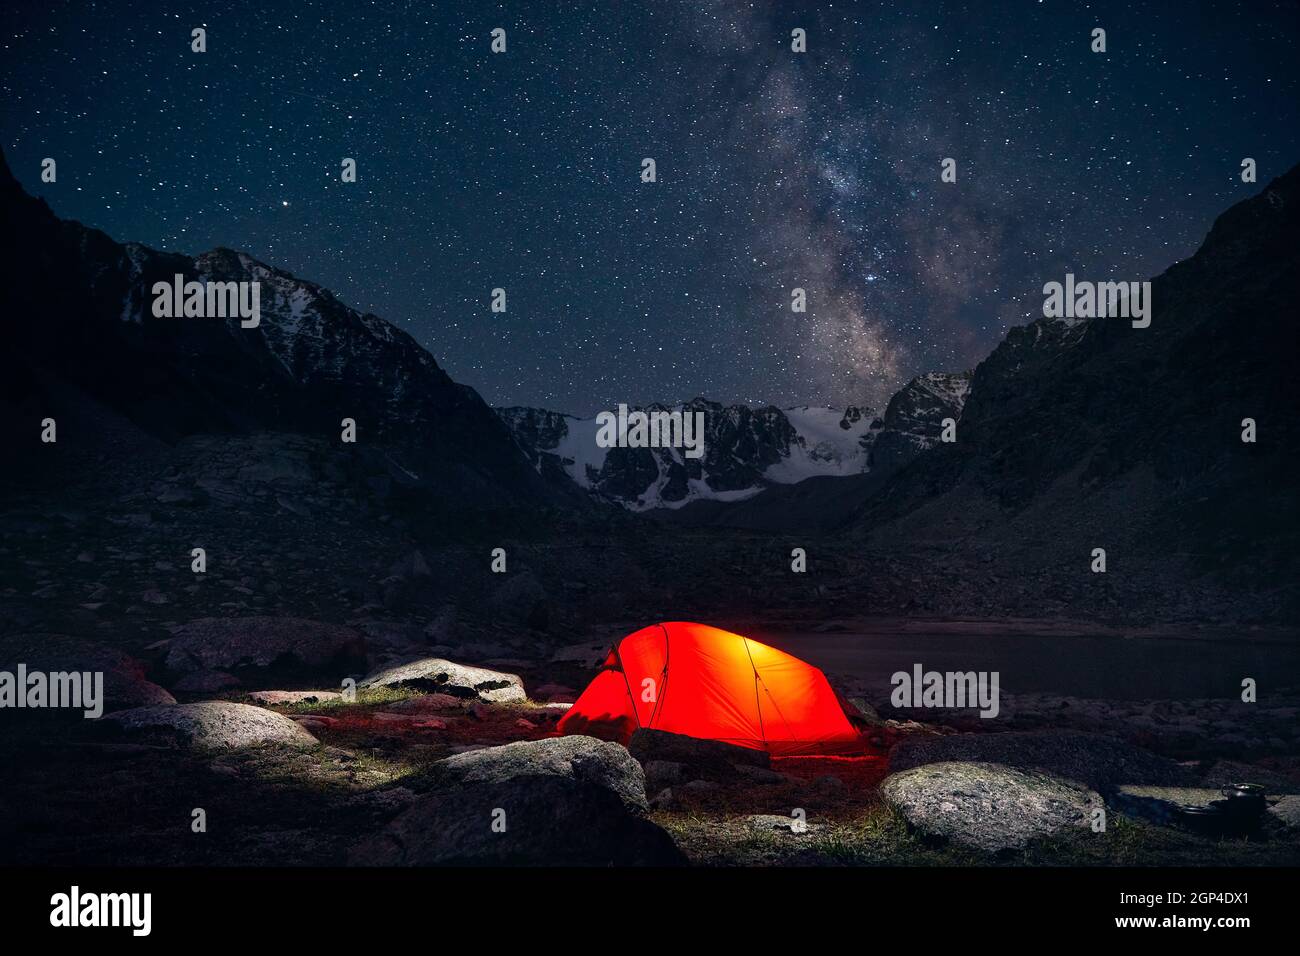 Tenda arancione con luce al campeggio nelle montagne sotto il cielo notturno con le stelle Foto Stock